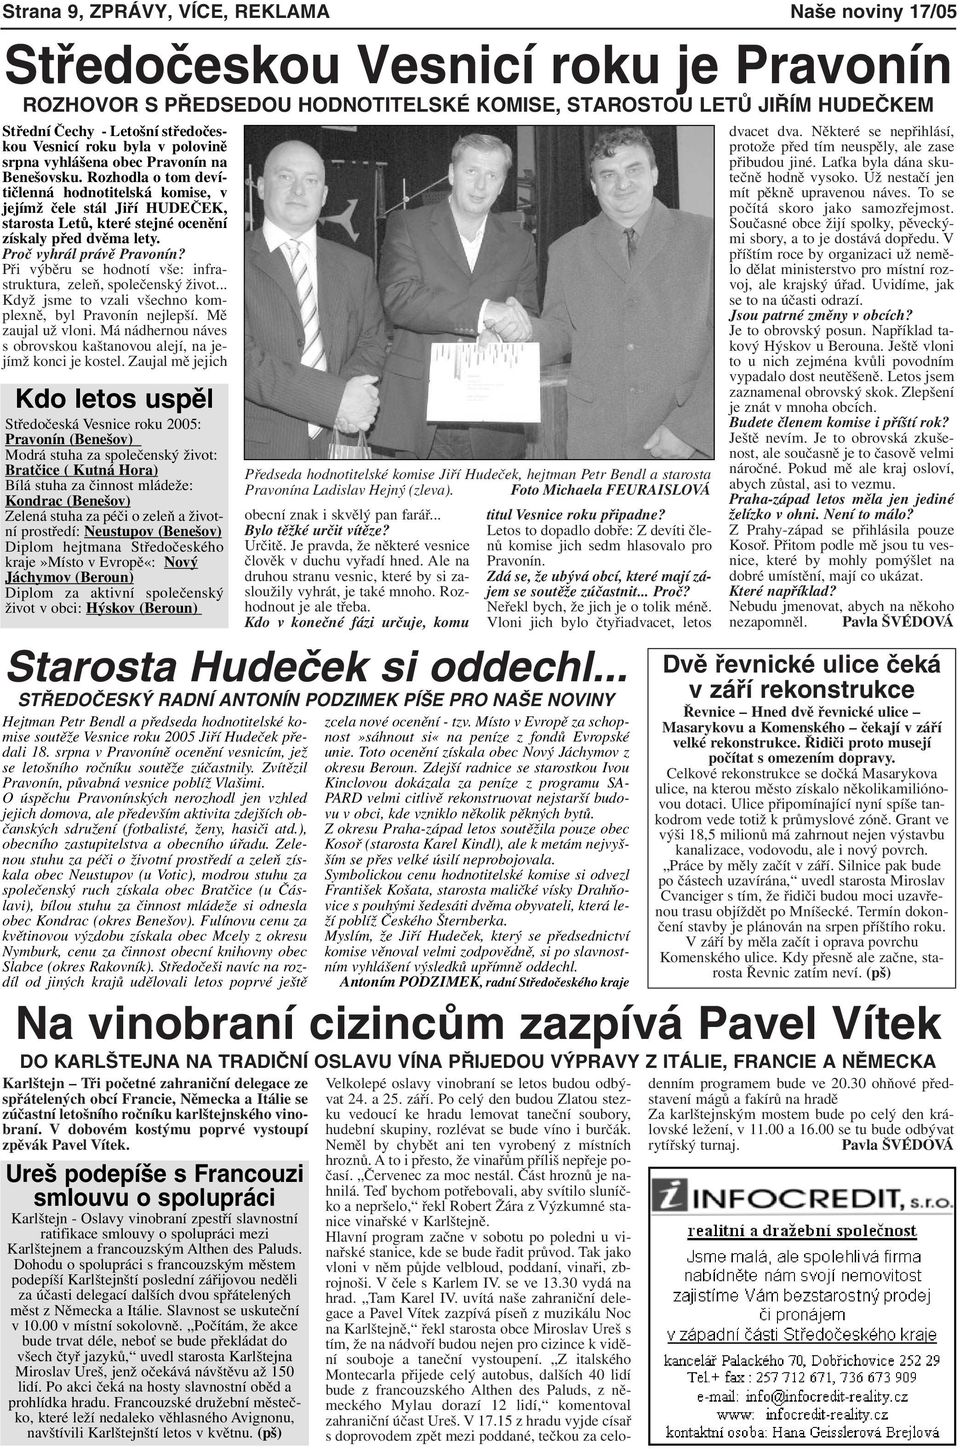 Rozhodla o tom devítičlenná hodnotitelská komise, v jejímž čele stál Jiří HUDEČEK, starosta Letů, které stejné ocenění získaly před dvěma lety. Proč vyhrál právě Pravonín?